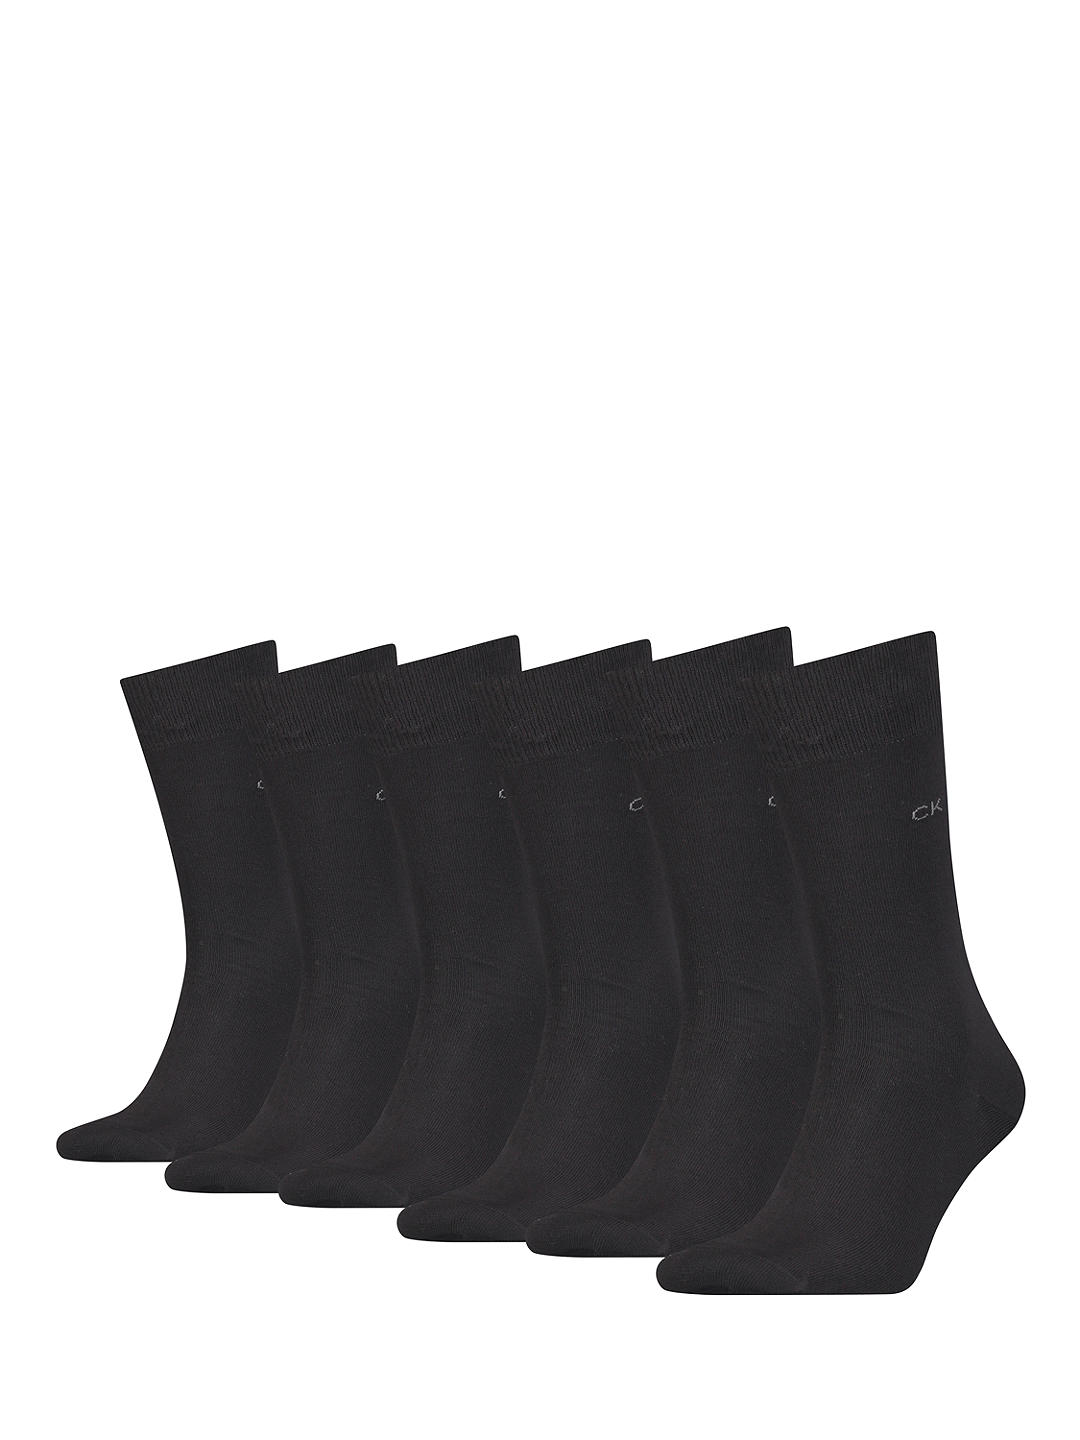 Calvin Klein Logo Ankle Socks, One Size, Pack of 6, 001 Black at John ...